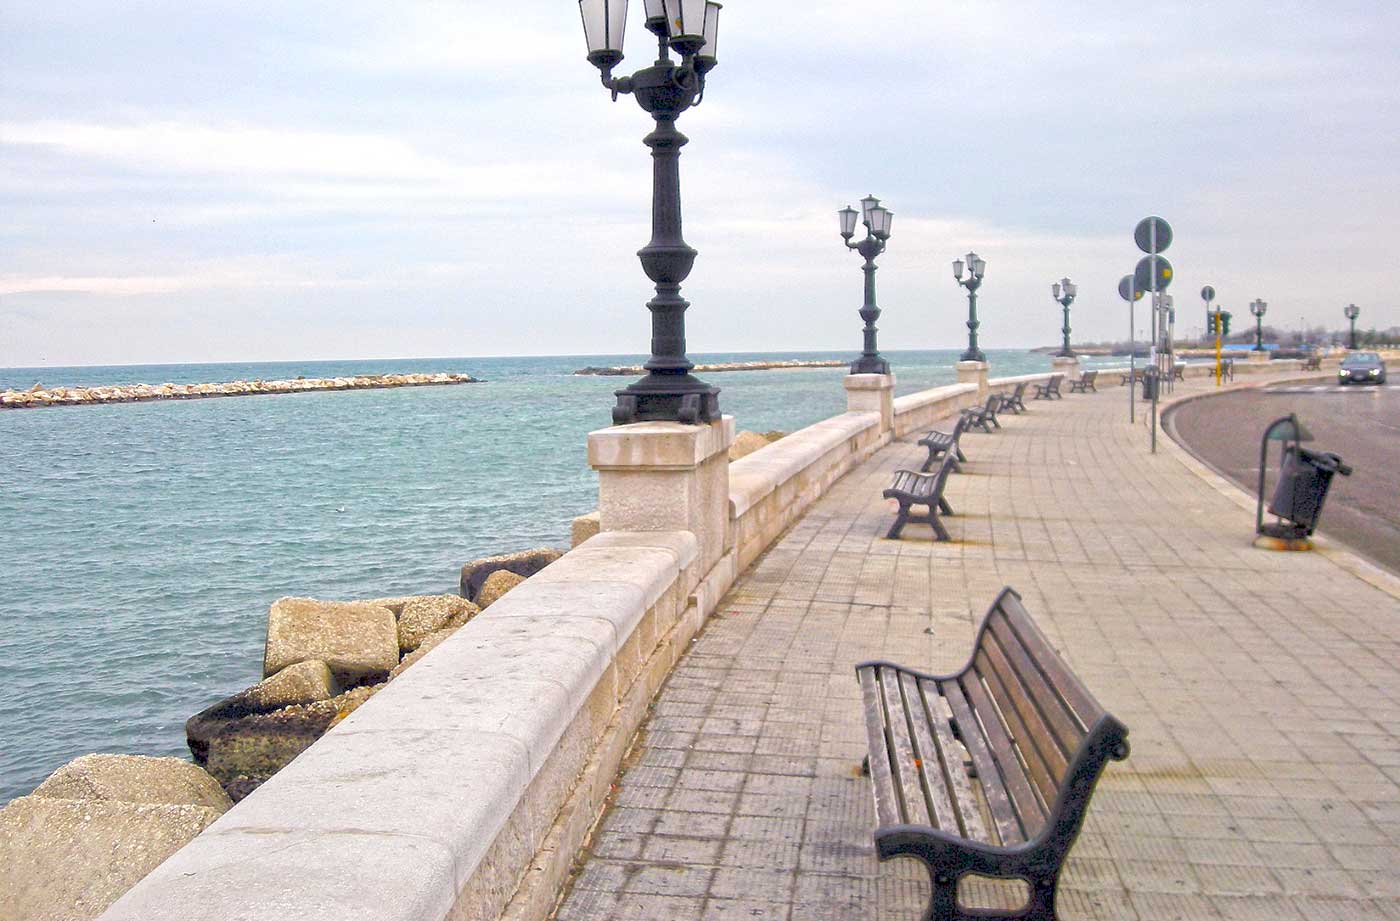 Lungomare (Seafront Promenade) 